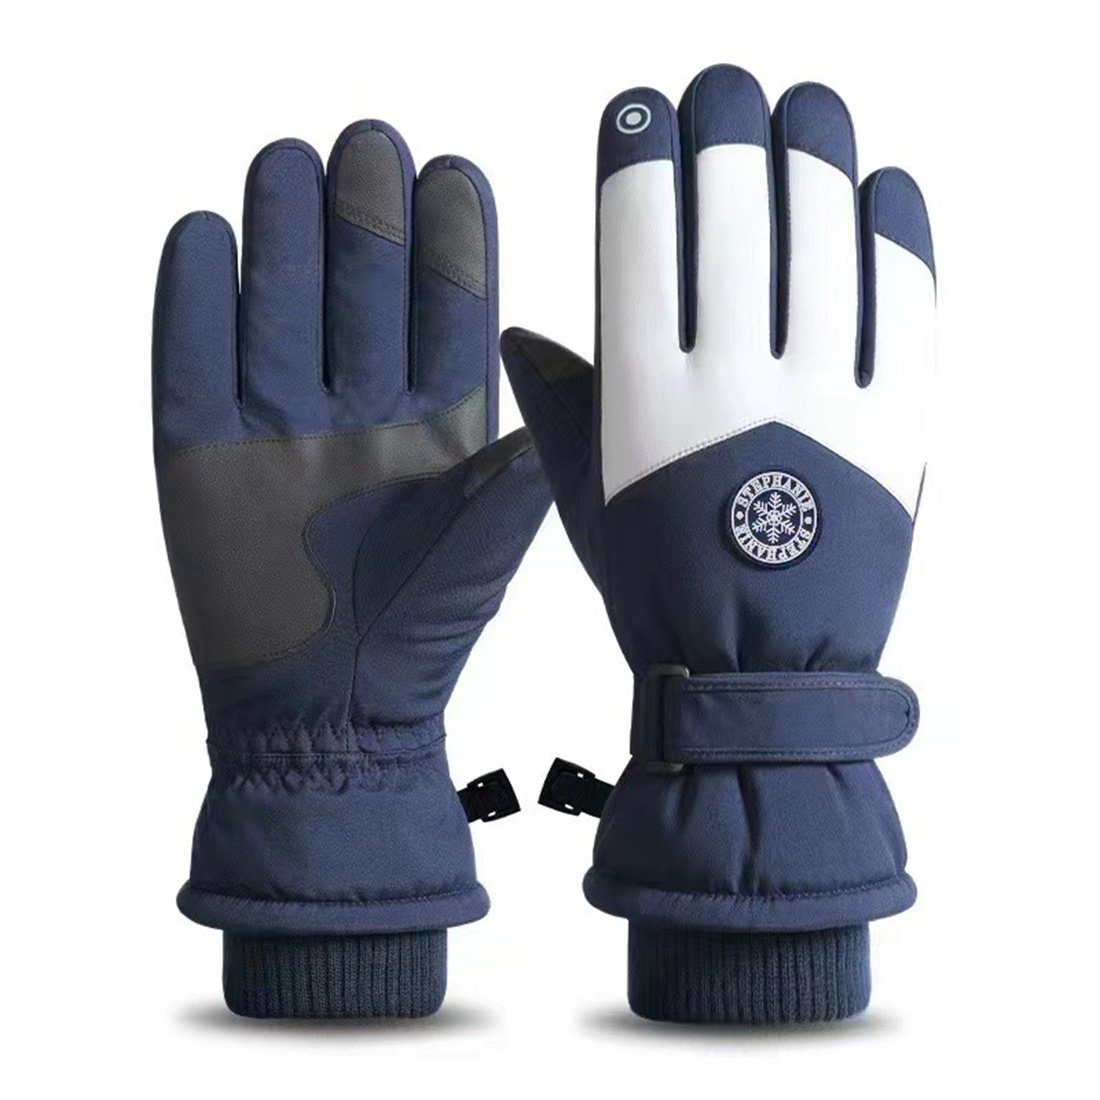 Reithandschuhe Winterliche, DÖRÖY unisex, warme Handschuhe, gepolsterte, Skihandschuhe blau